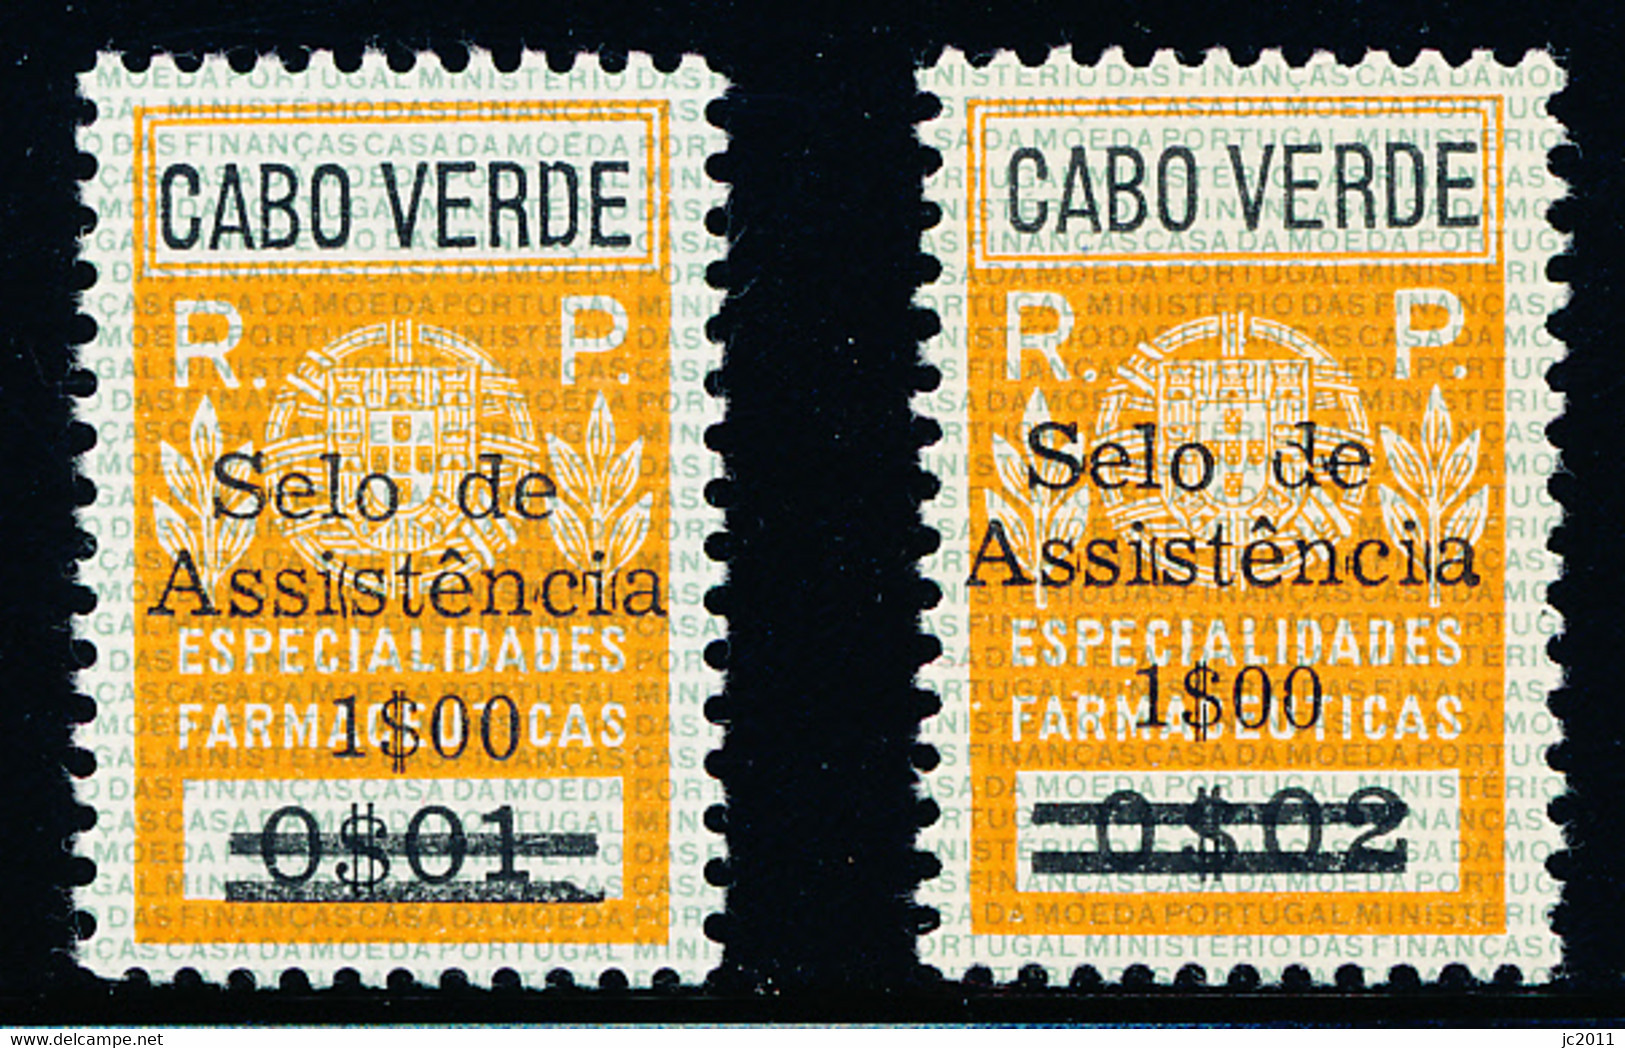 Cabo Verde - 1967 - Charaty Tax / Especialidades Farmacêuticas - MNH - Isola Di Capo Verde